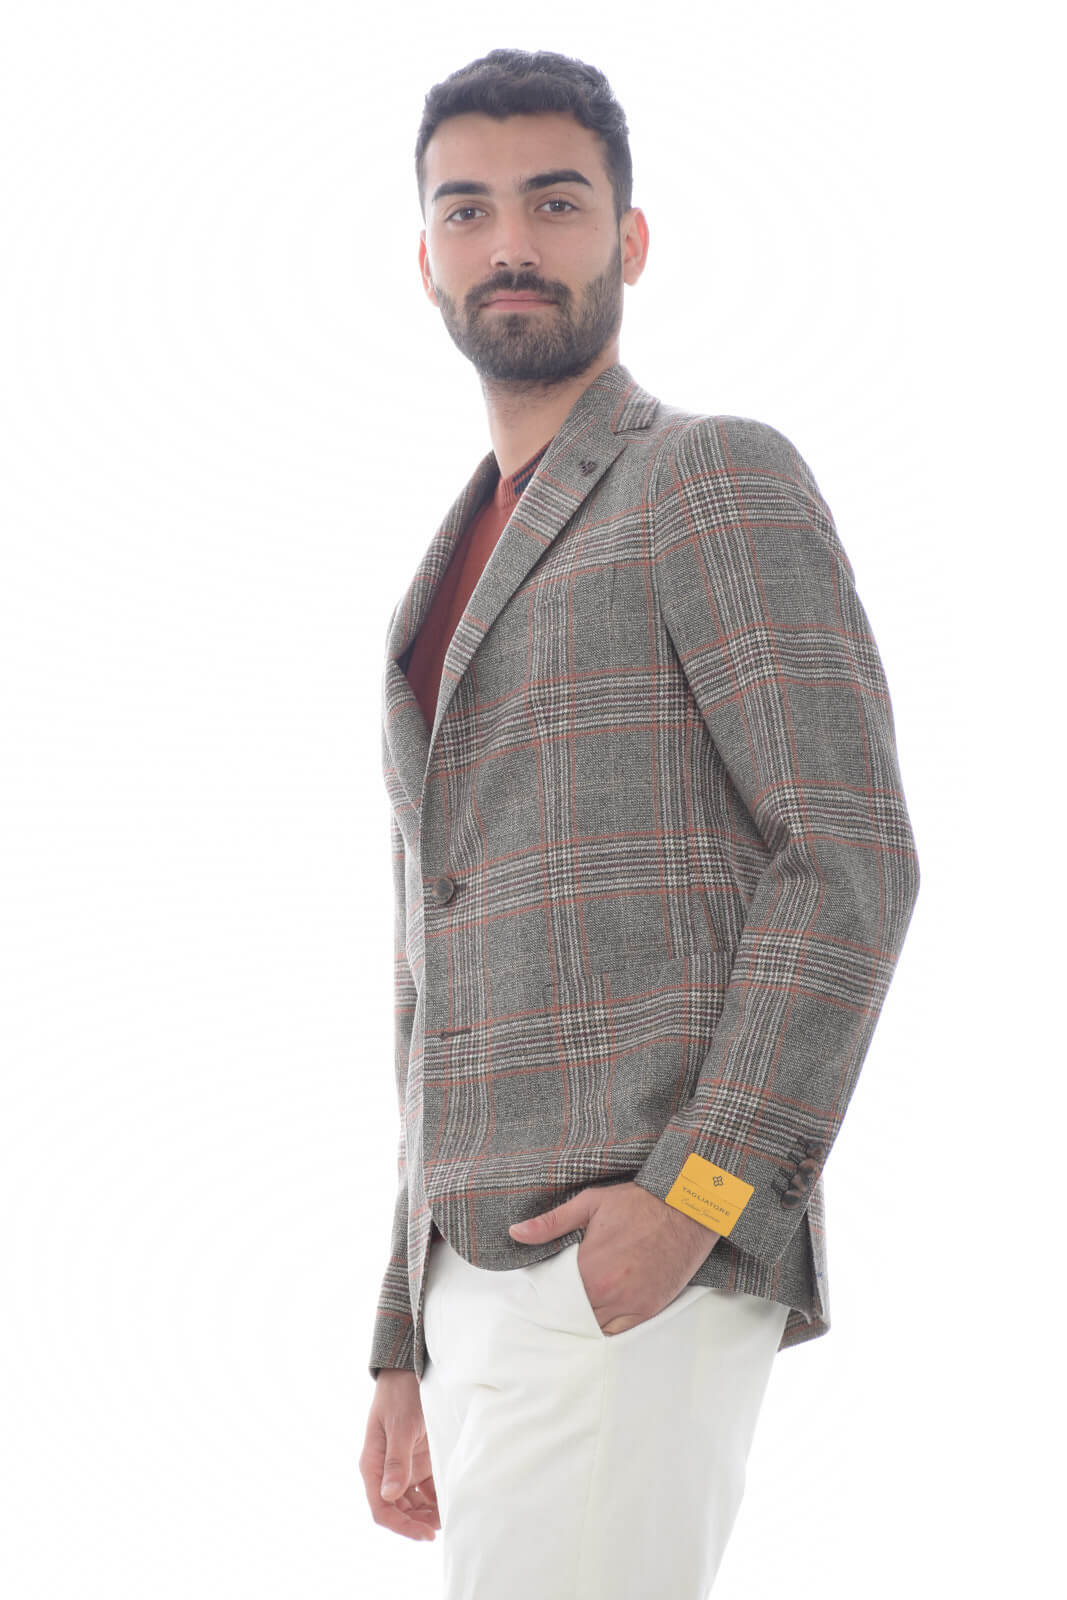 Tagliatore Men's Jacket in Prince of Wales pattern